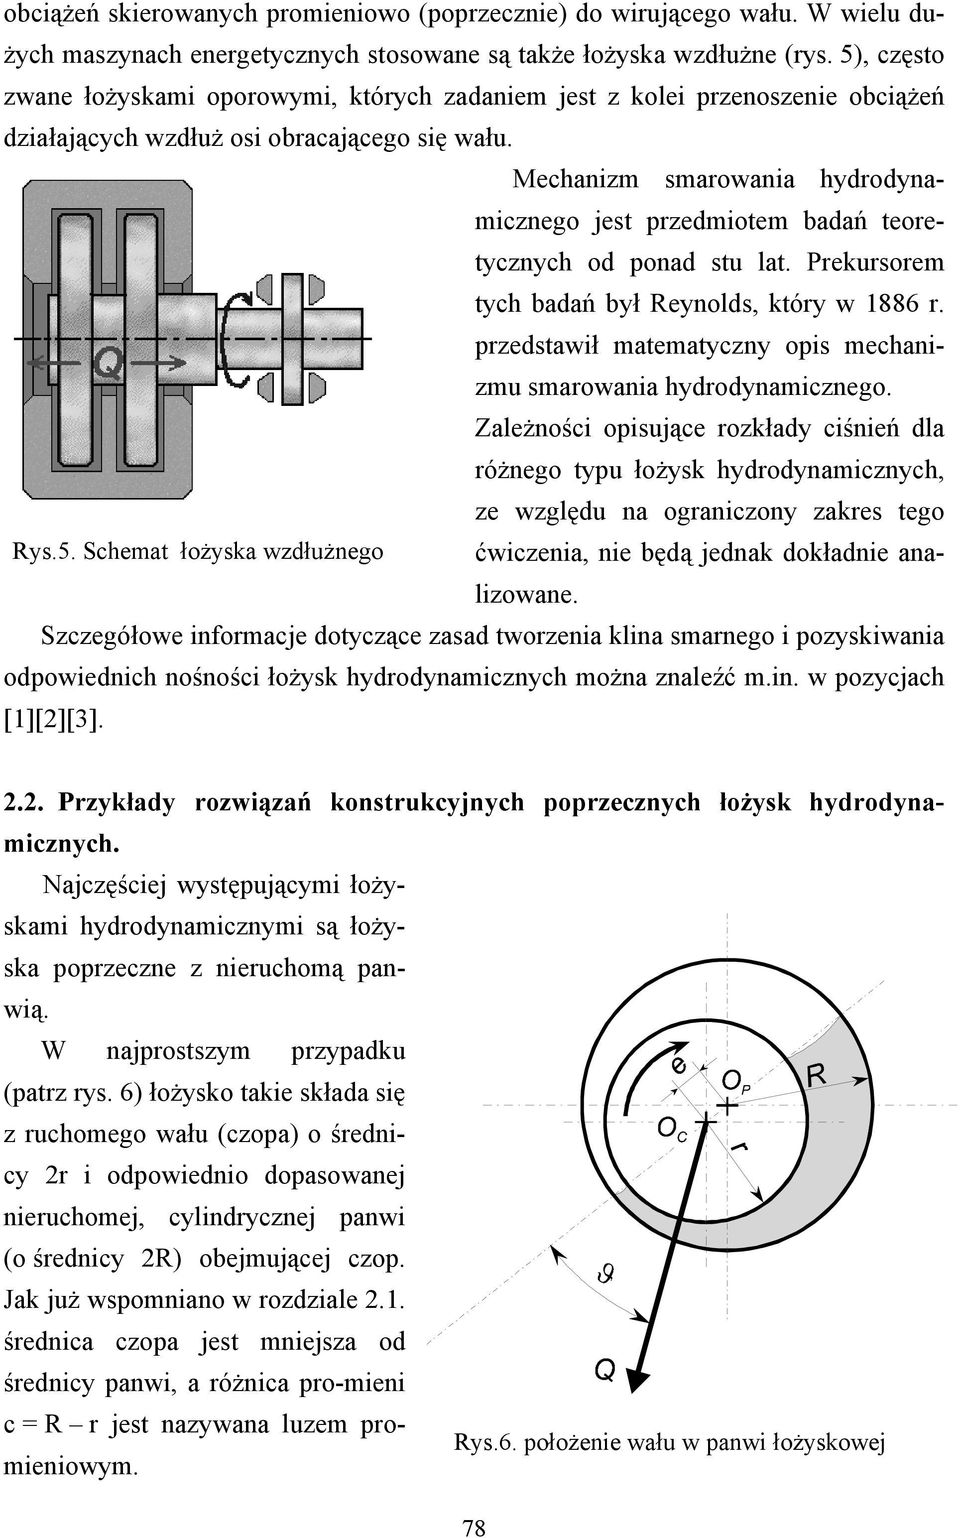 Mechanizm smarowania hydrodynamicznego jest przedmiotem badań teoretycznych od ponad stu lat. Prekursorem tych badań był Reynolds, który w 1886 r.